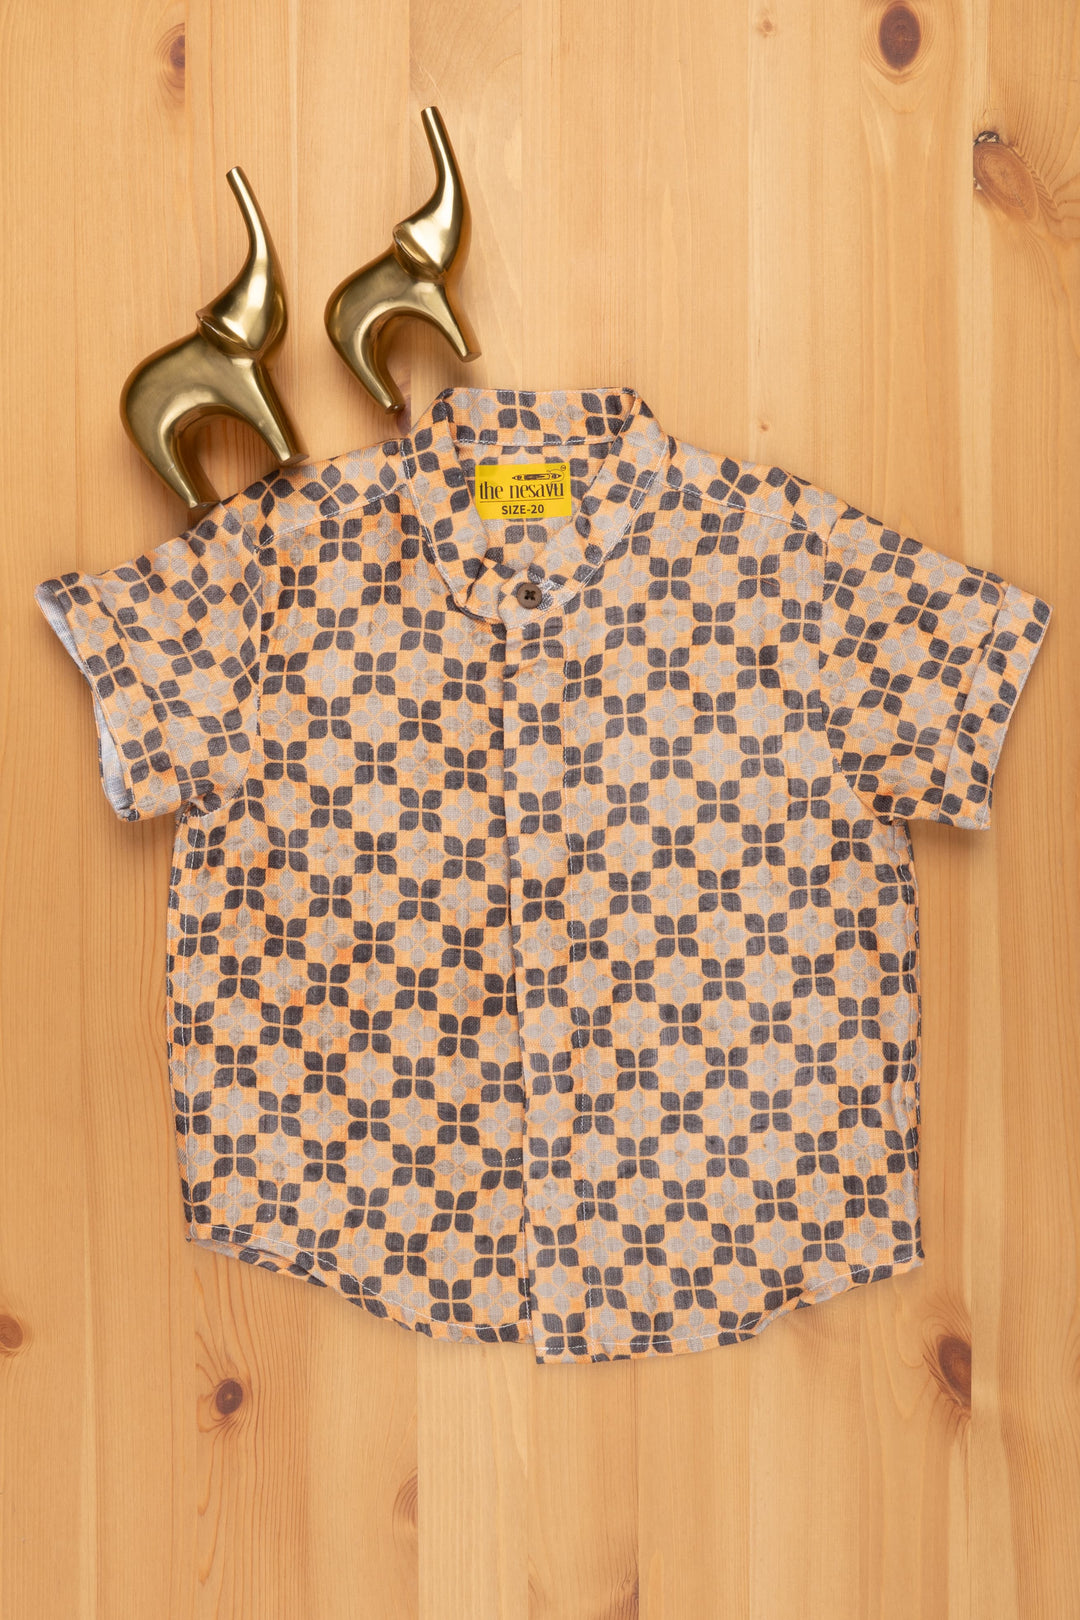 The Nesavu Boys Linen Shirt Karaikudi Chettinad Tile Inspires Print Boys Linen Shirt for a Free-Spirited Look Nesavu 14 (6M) / Yellow / Linen BS072 Tile-Inspired Printed Boys Linen Shirt | Kids Printed Shirt | The Nesavu